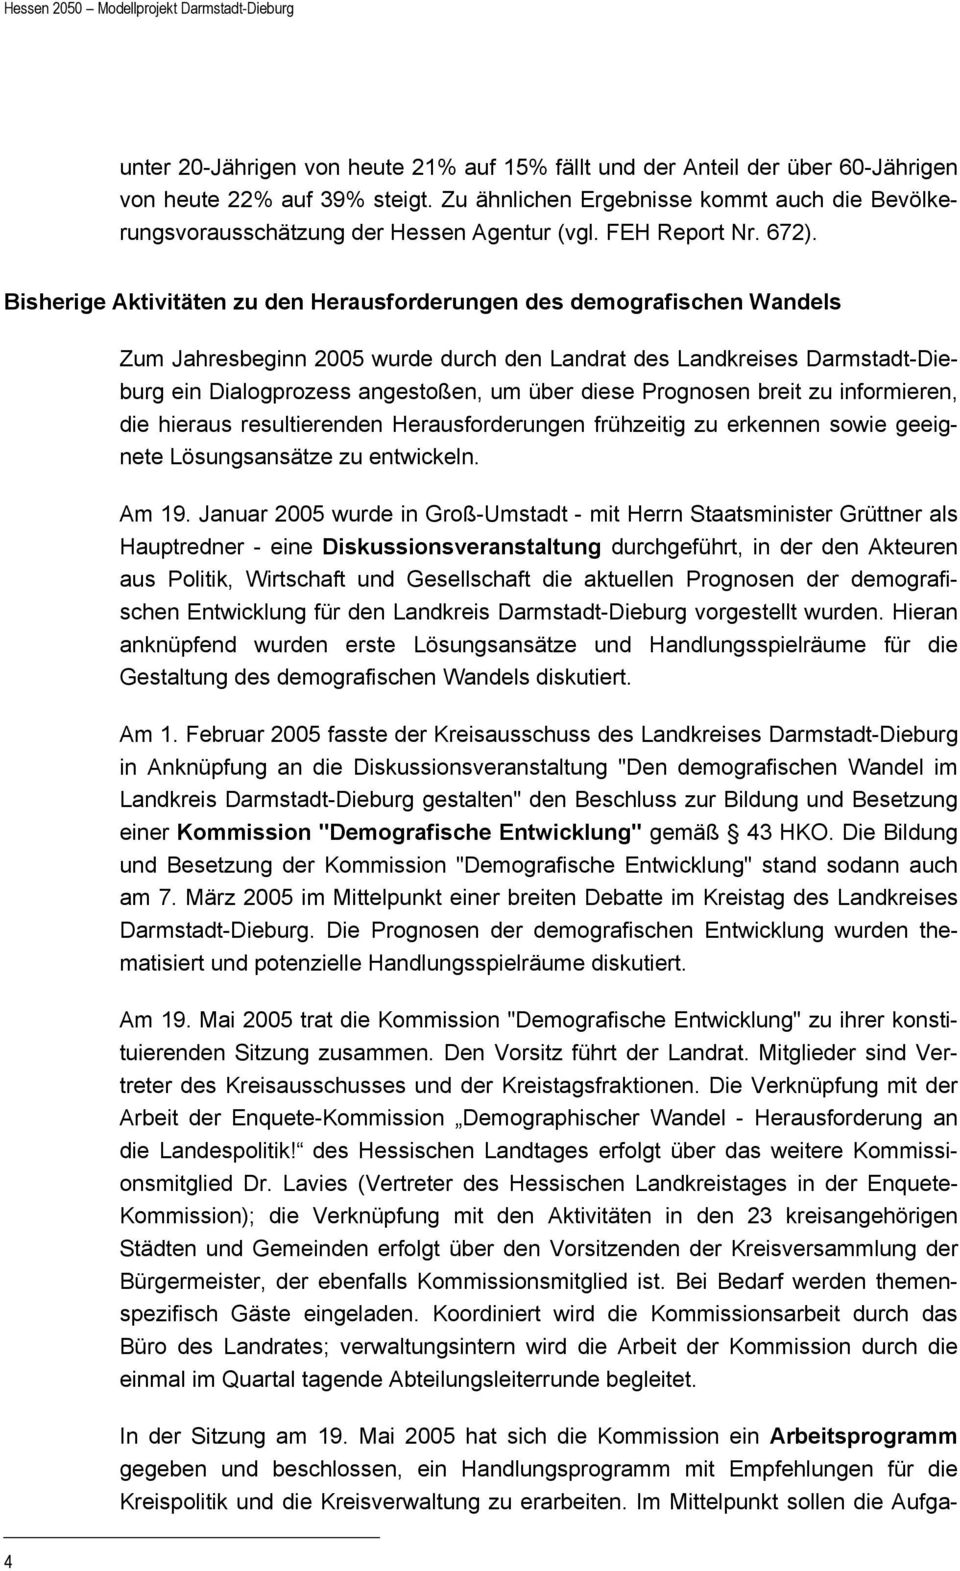 Bisherige Aktivitäten zu den Herausforderungen des demografischen Wandels Zum Jahresbeginn 2005 wurde durch den Landrat des Landkreises Darmstadt-Dieburg ein Dialogprozess angestoßen, um über diese